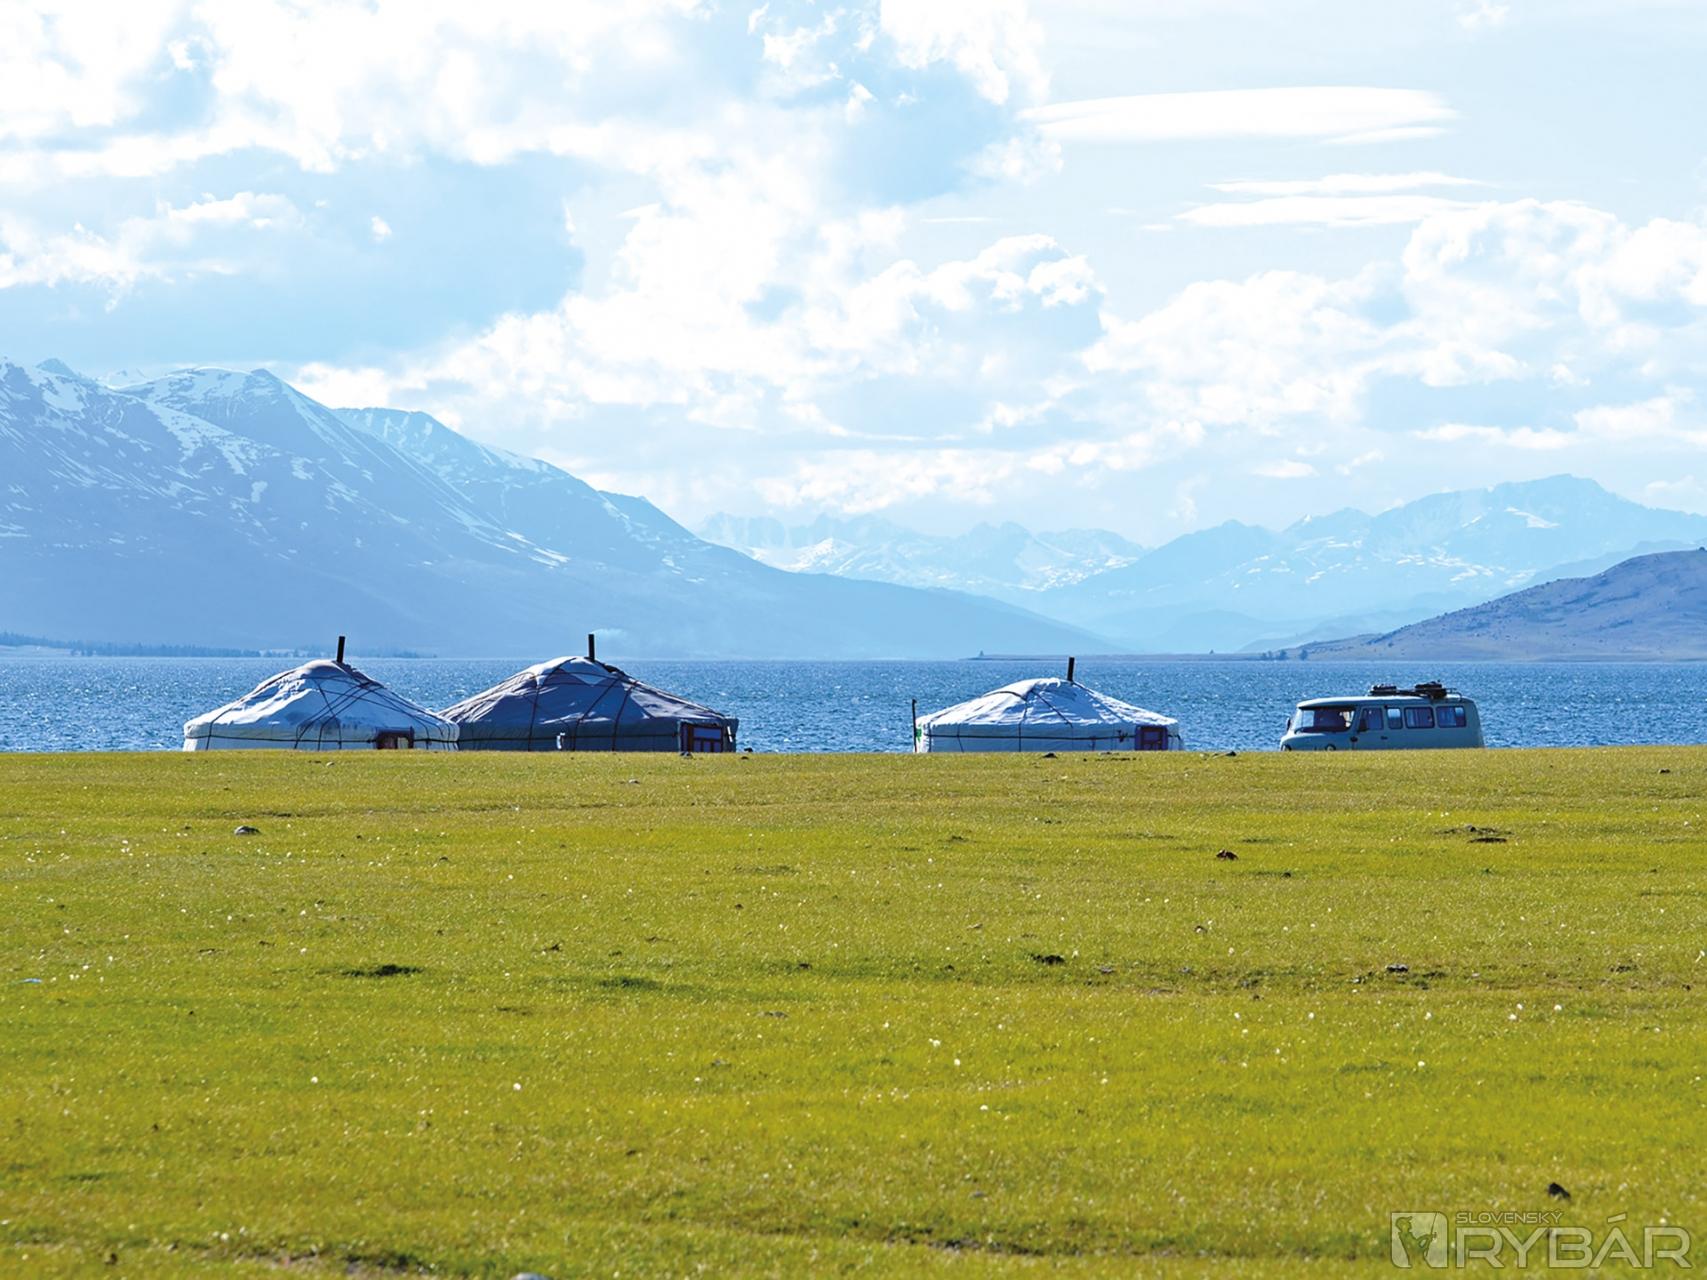 Naše jurty na brehu jazera boli naším altajským domovom.